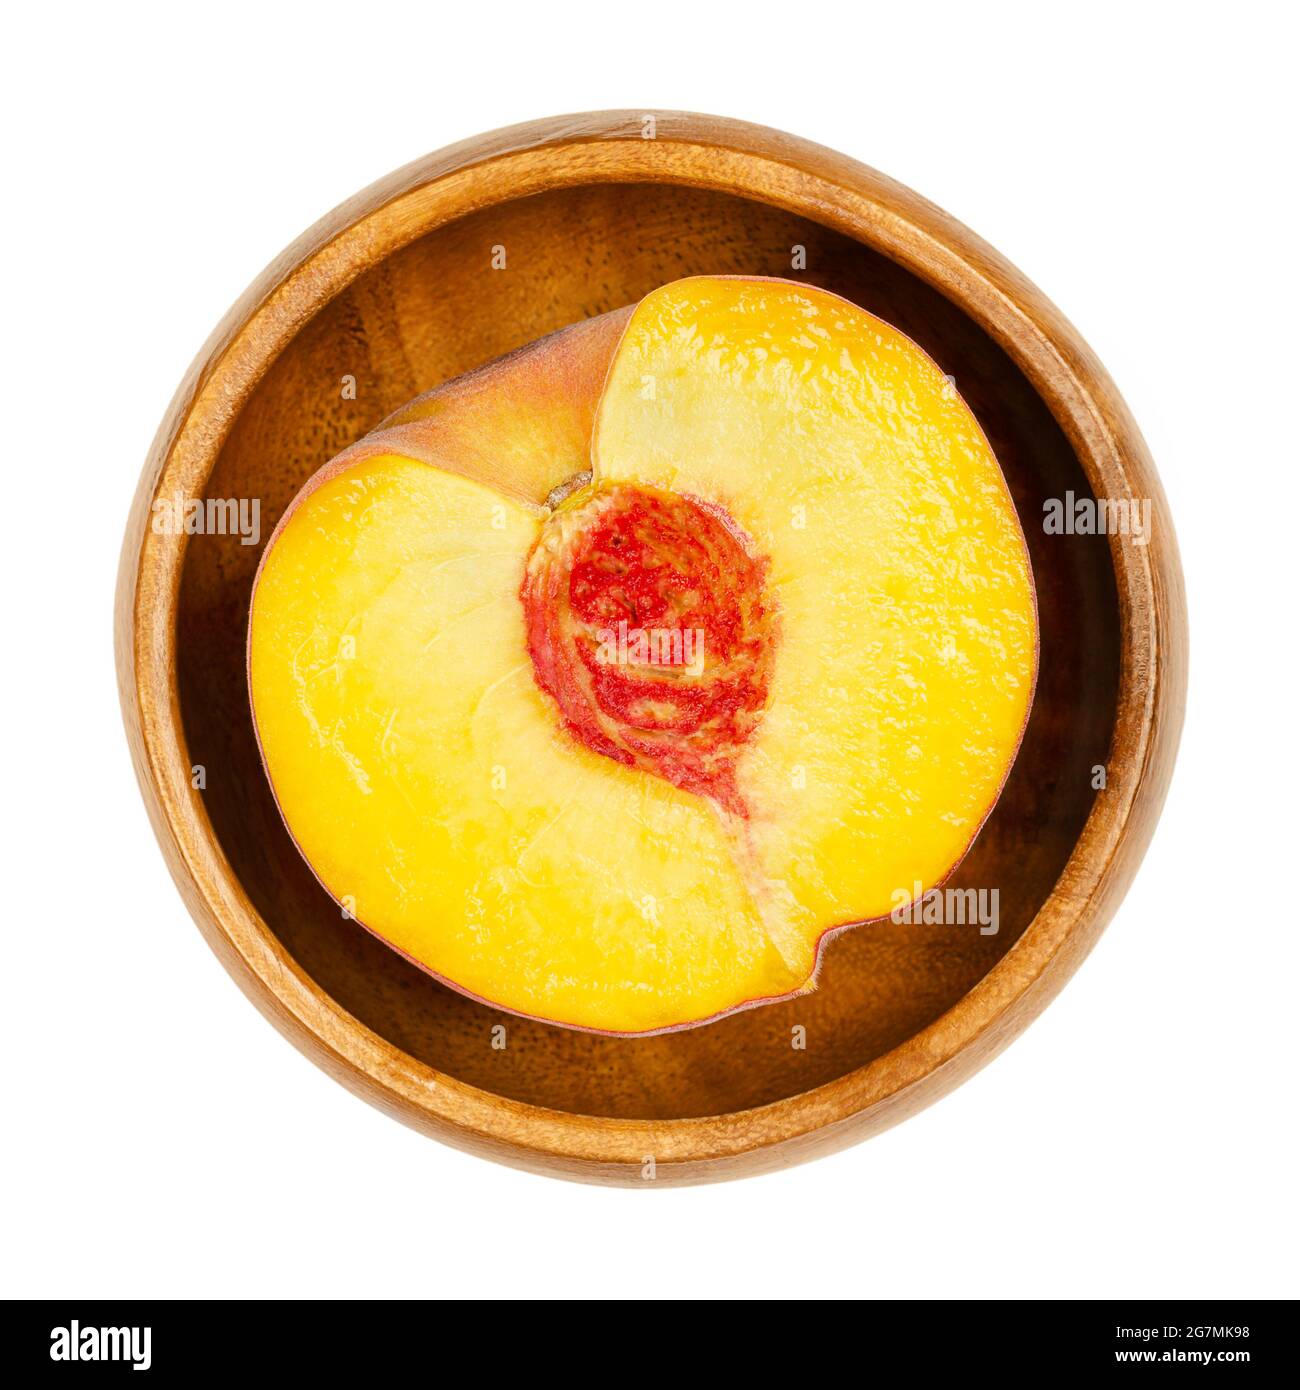 Pesche metà in una ciotola di legno. Sezione trasversale di un frutto maturo, con polpa di frutta gialla succosa, pietra arenaria rossa al centro e pelle vellutata. Foto Stock